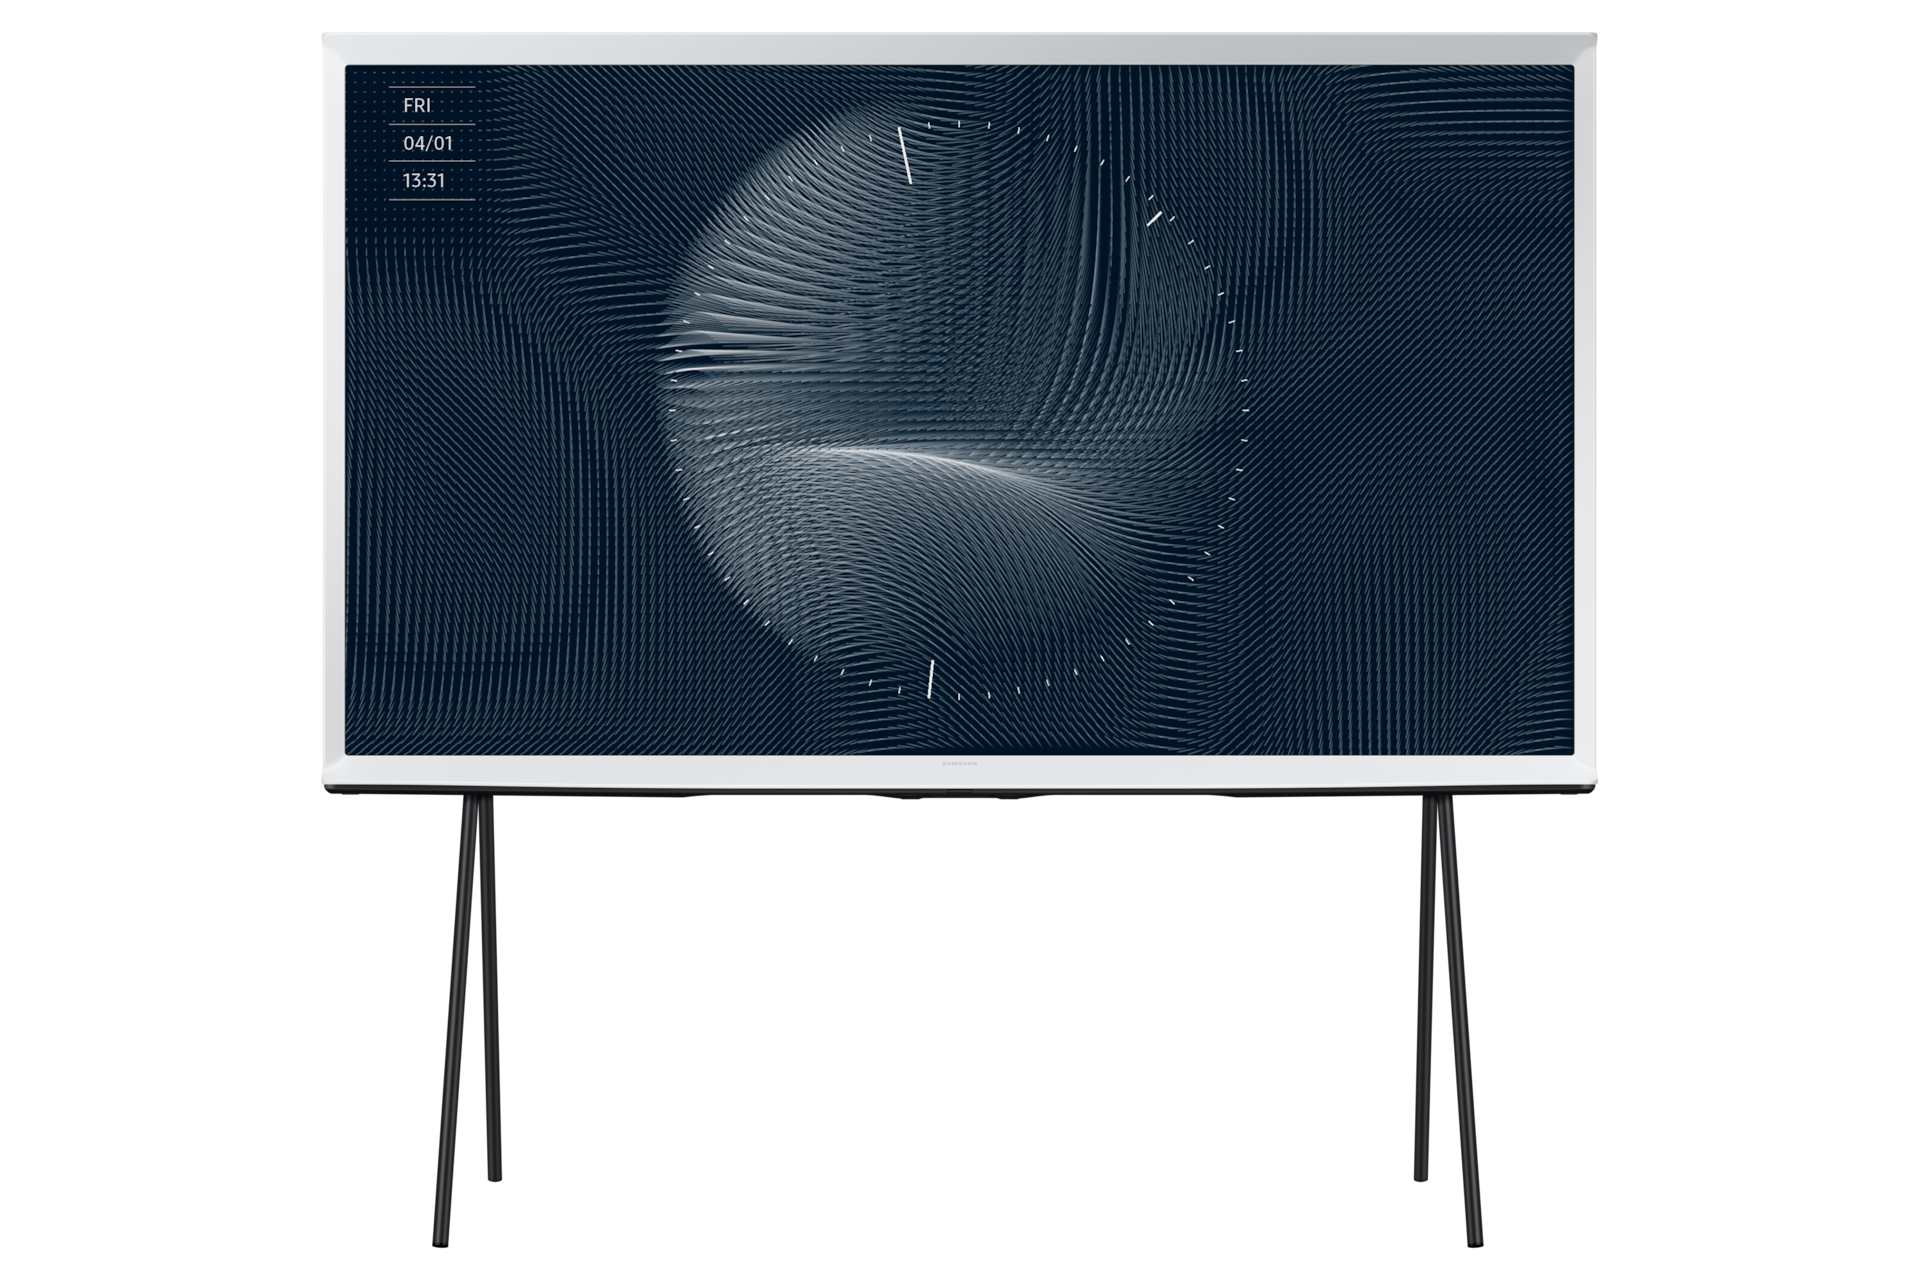 Chiêm ngưỡng trọn vẹn vẻ đẹp của The Serif 65 inch LS01B 2022 (QA65LS01BAKXXV) với thiết kế chữ I phá cách, màn hình QLED sắc sảo, chân đế linh hoạt.